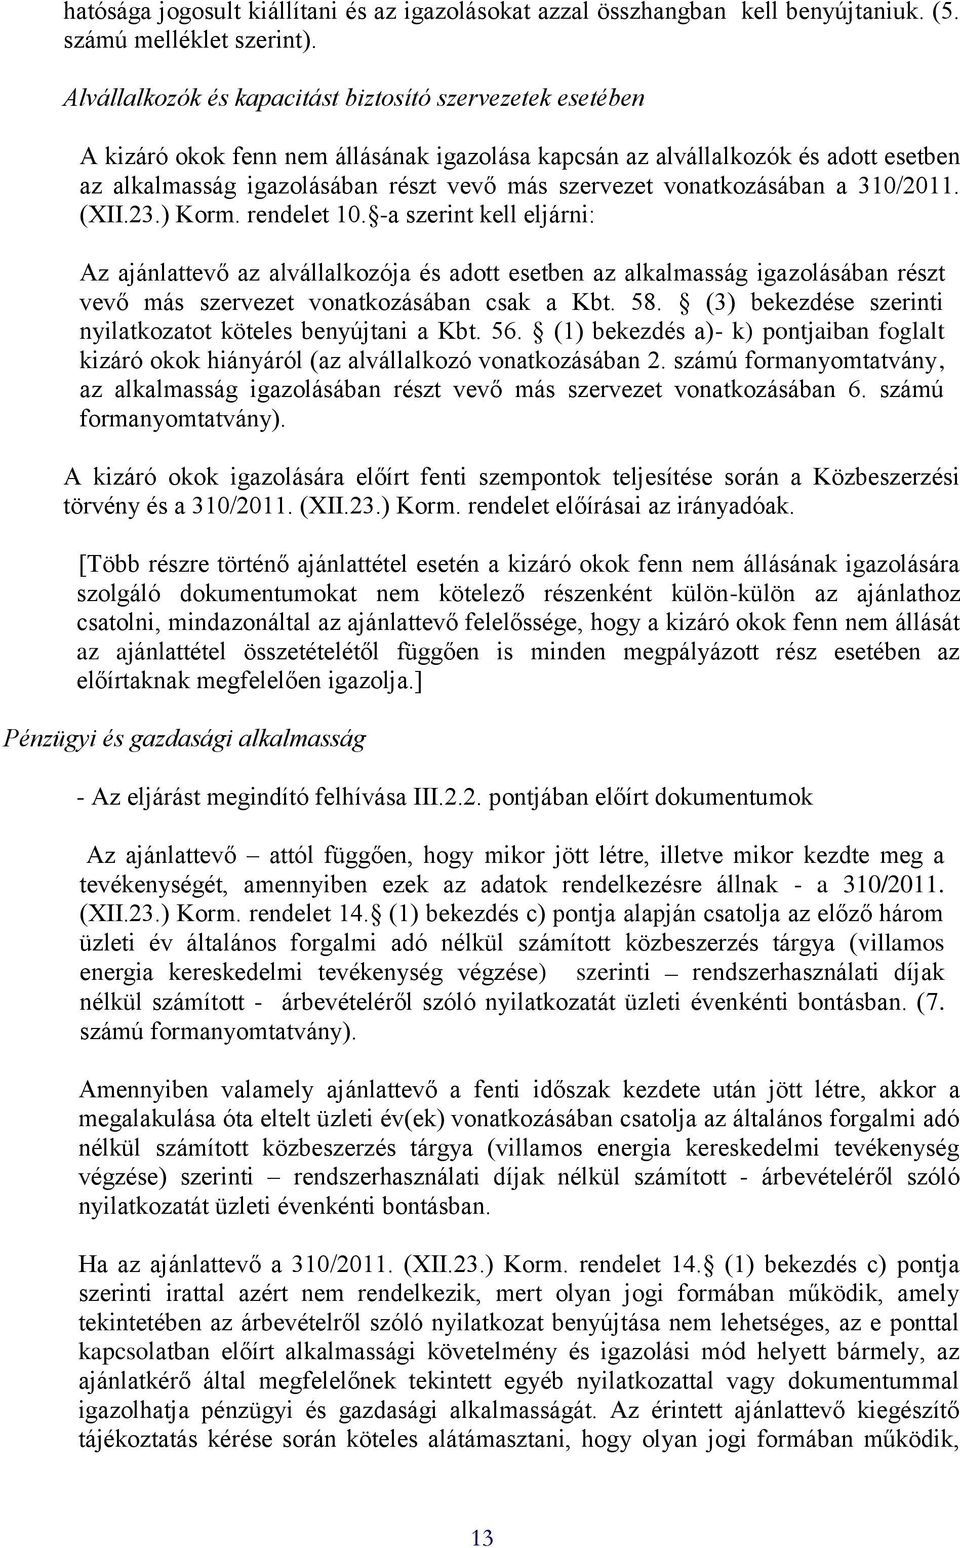 vonatkozásában a 310/2011. (XII.23.) Korm. rendelet 10.